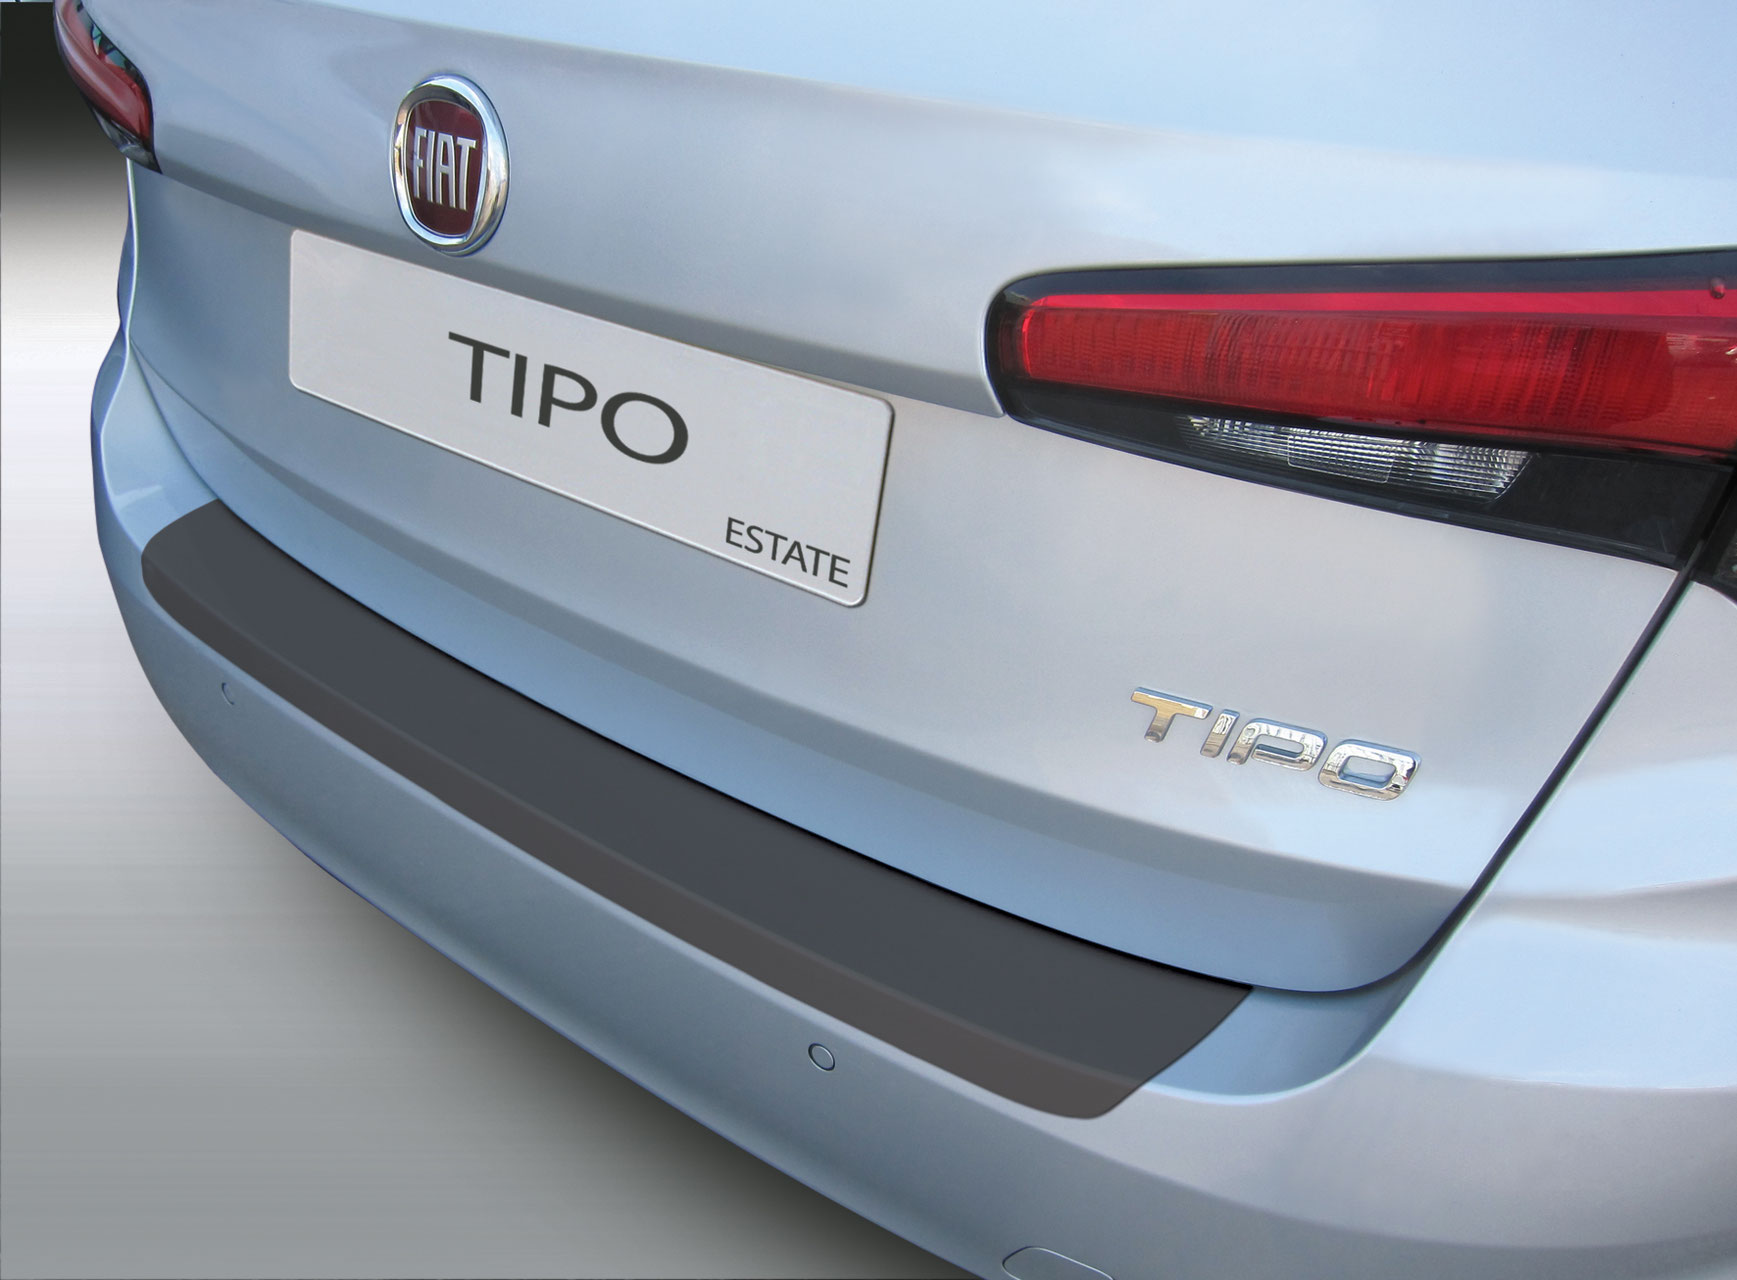 Ladekantenschutz für Fiat Tipo - Schutz für die Ladekante Ihres